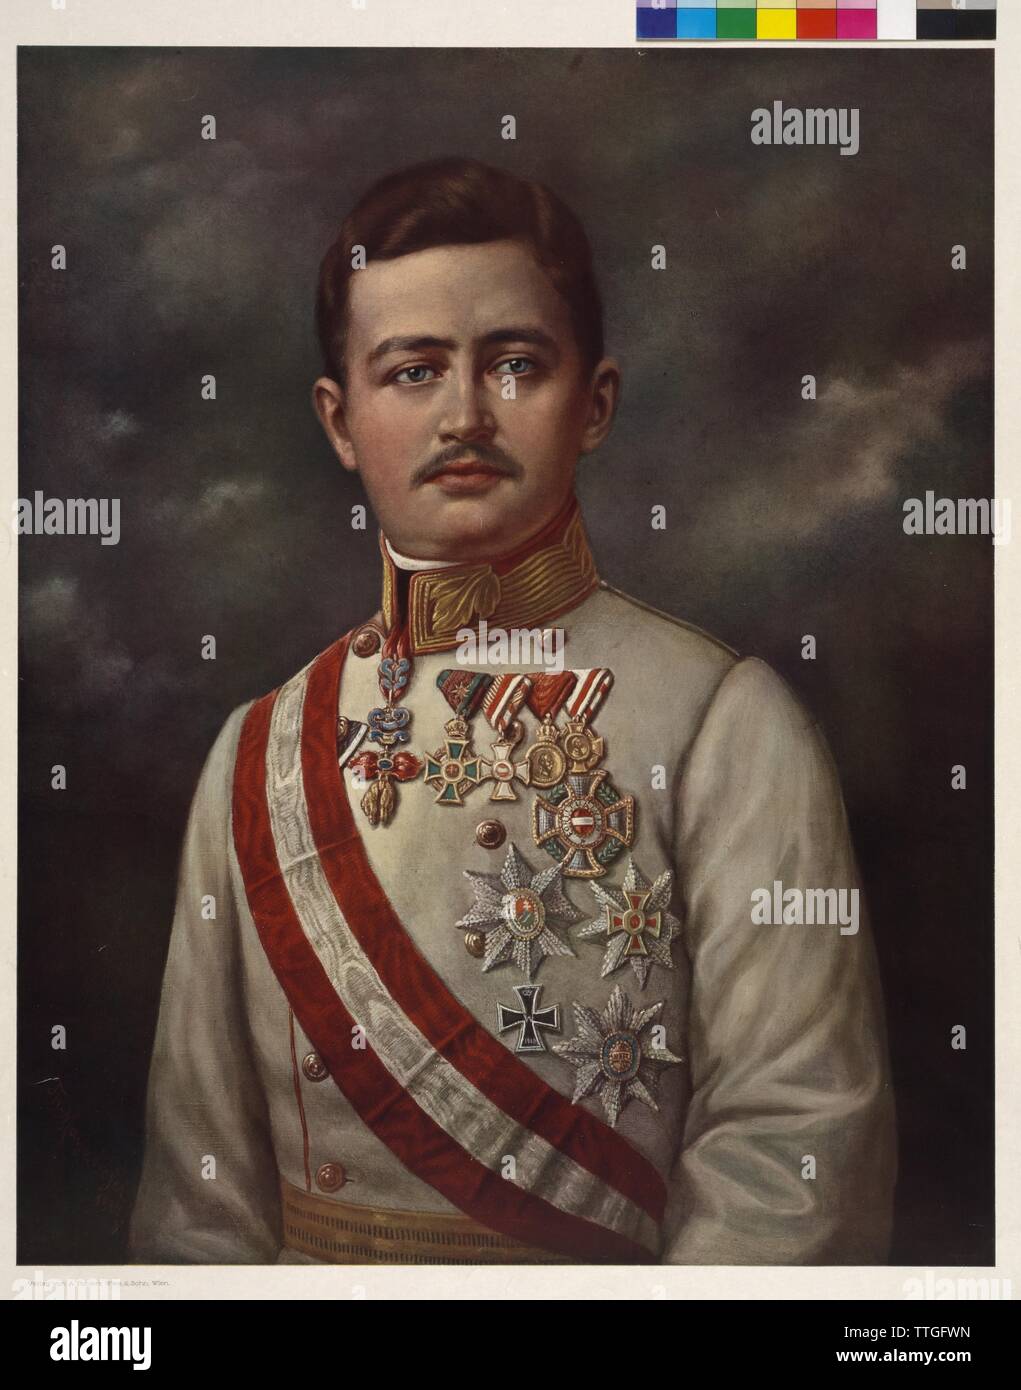 Karl I., Kaiser von Österreich, Farbdruck, basierend auf einem Gemälde von Theodor Mayerhofer, Additional-Rights - Clearance-Info - Not-Available Stockfoto